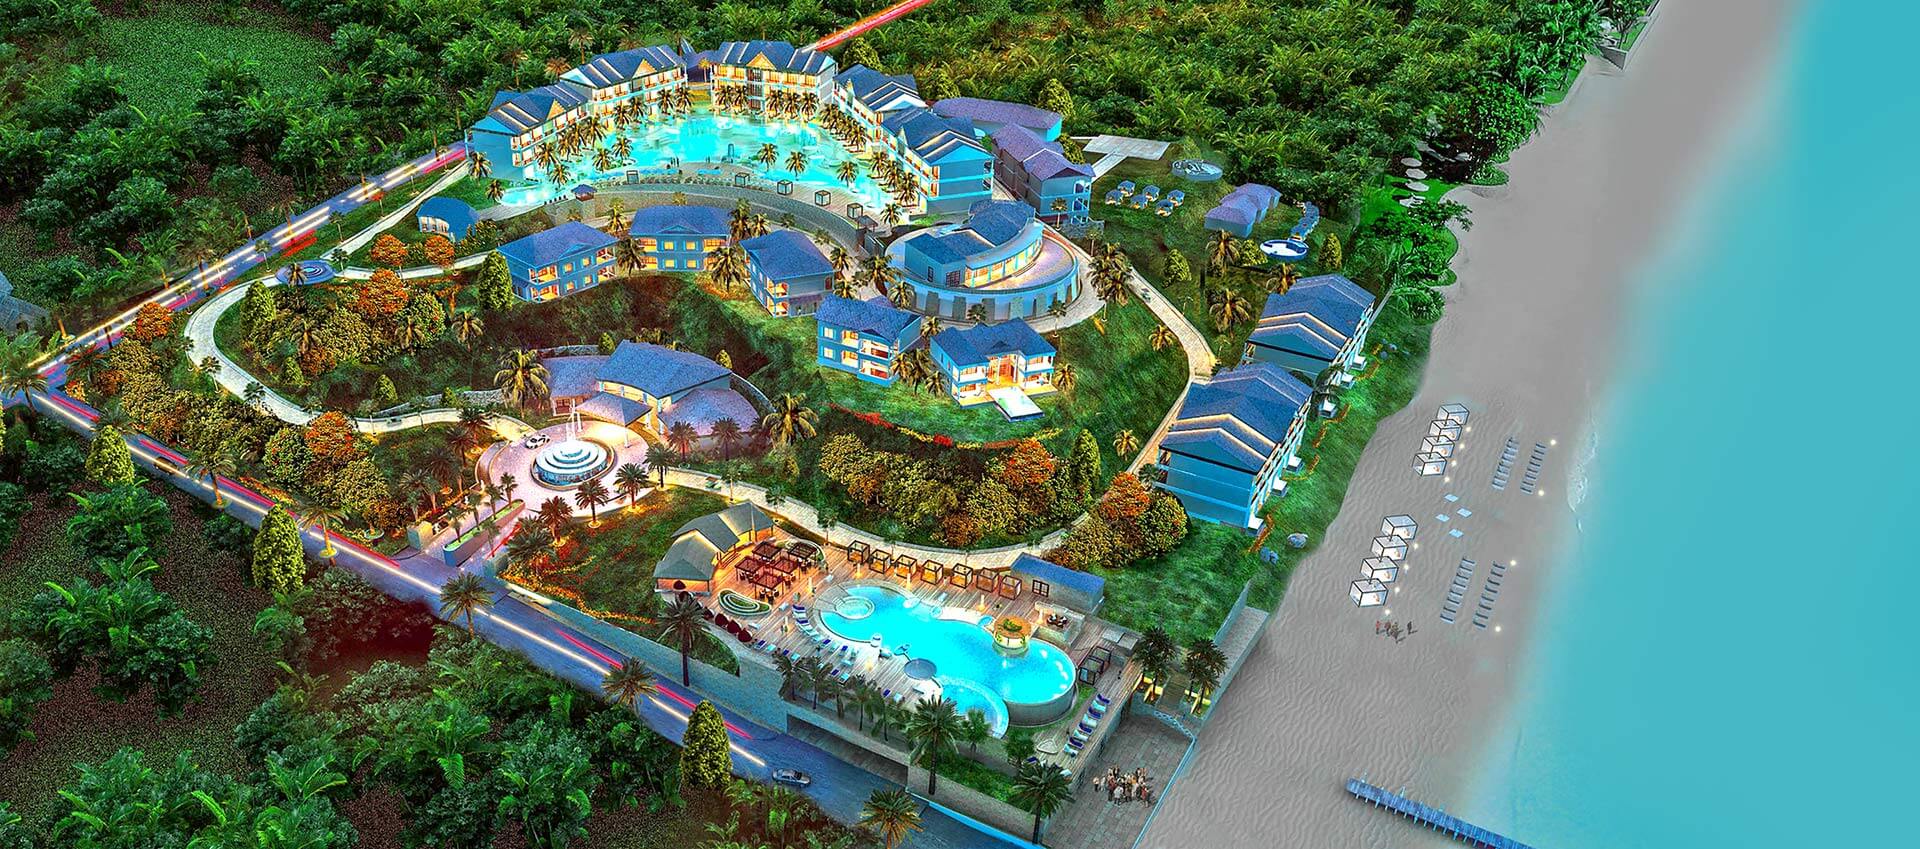 Anichi Resort & Spa - утвержденный проект недвижимости, включенный в программу Доминики «Гражданство через инвестиции»